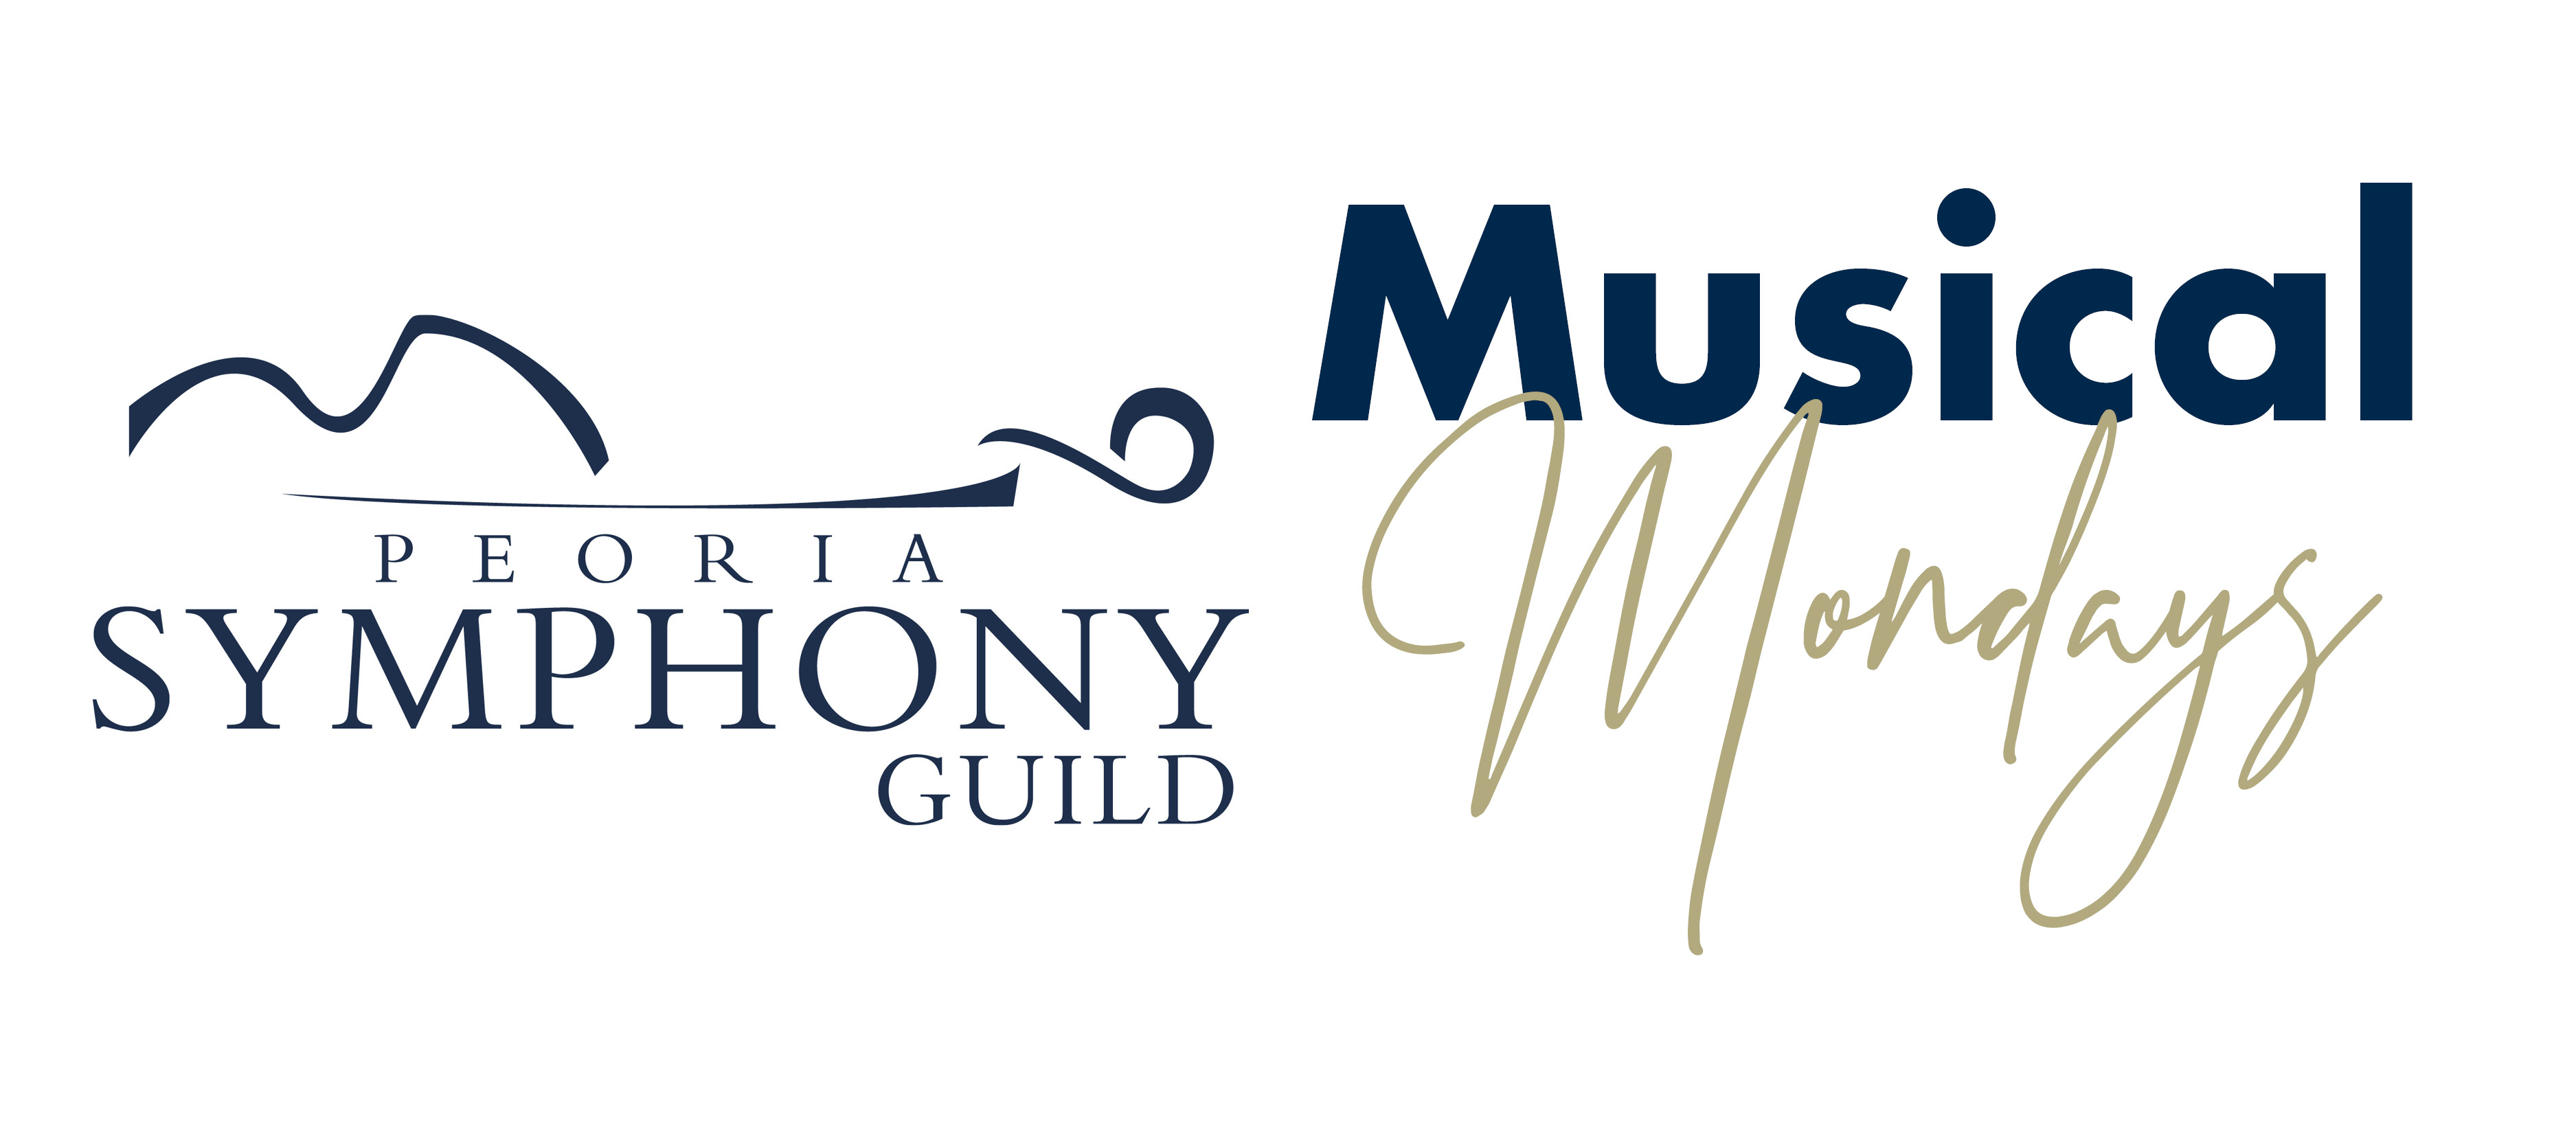 Symphony Guild Musical Monday: Cellist Christine Lamprea